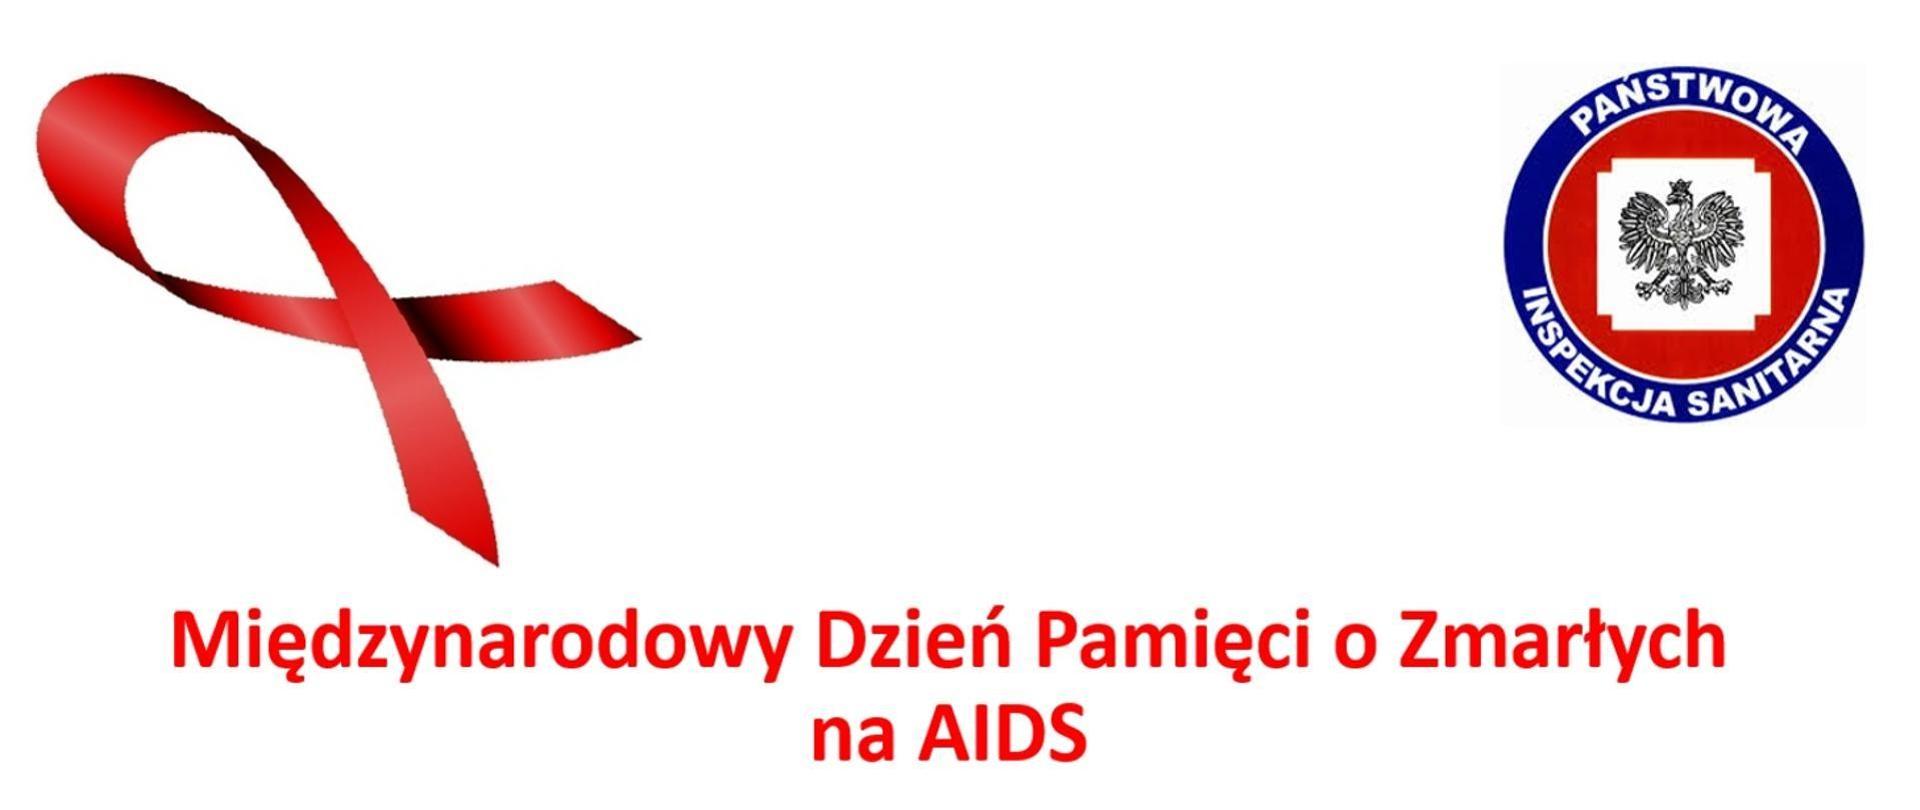 Na białym tle umieszczono czerwoną wstęgę oraz logo Państwowej Inspekcji Sanitarnej. Poniżej znajduje się napis "Międzynarodowy Dzień Pamięci o Zmarłych na AIDS".